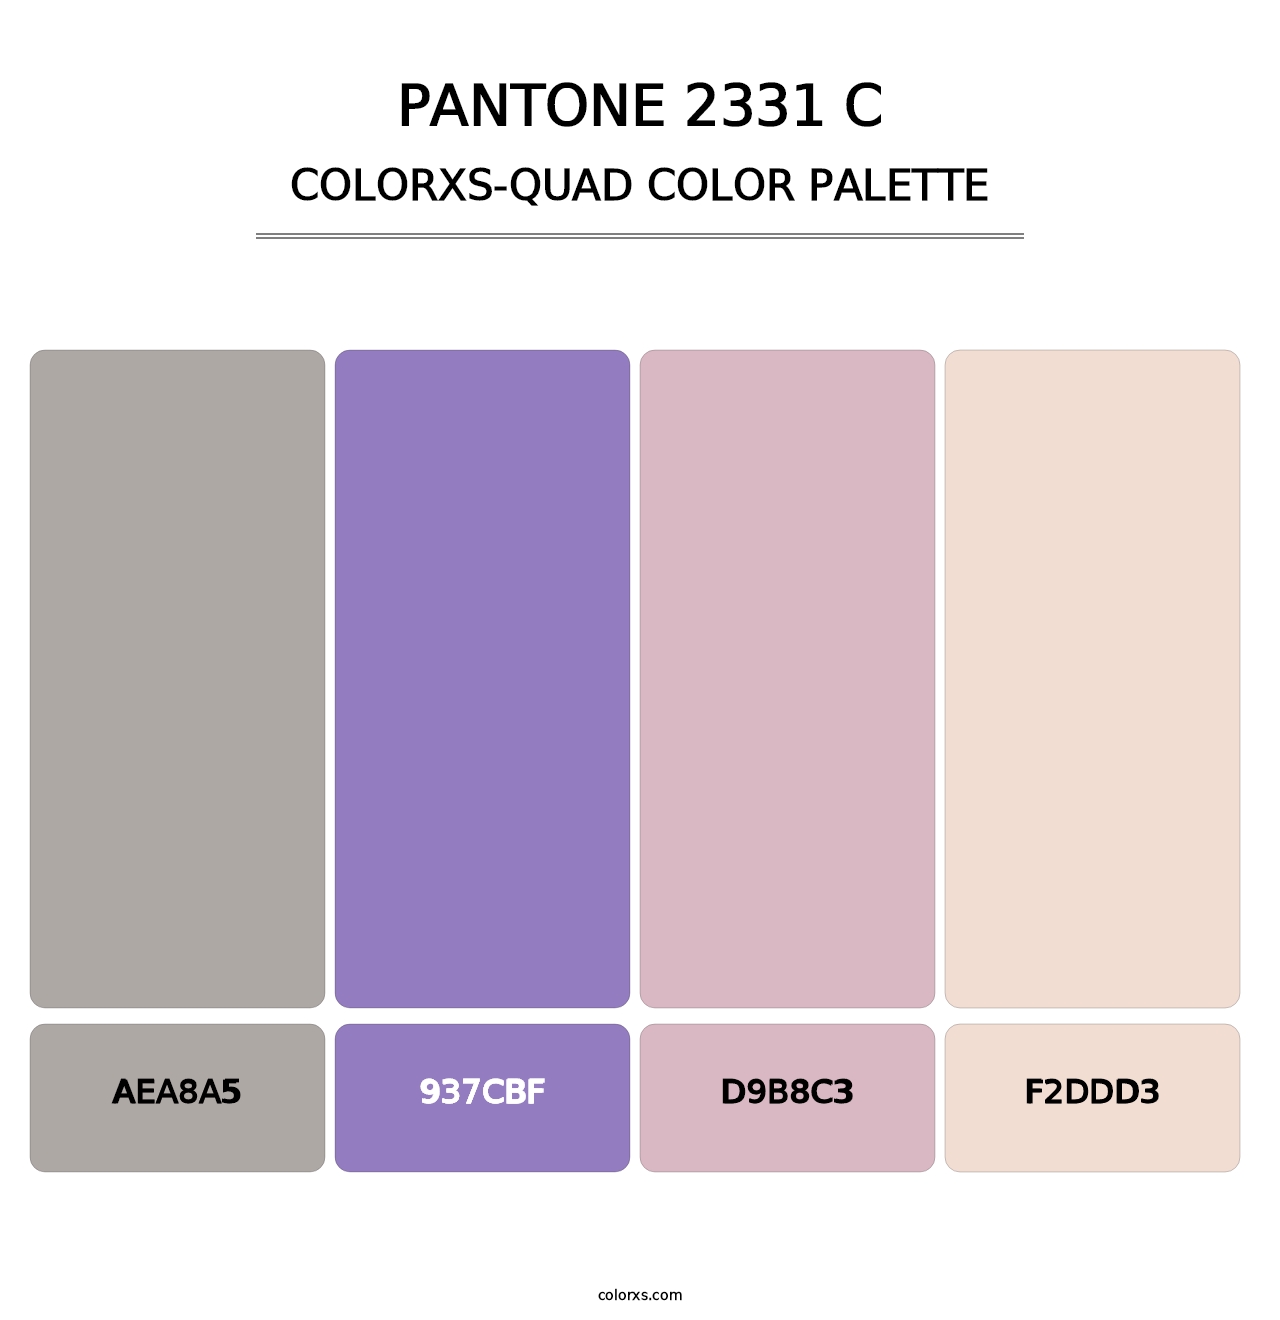 PANTONE 2331 C - Colorxs Quad Palette